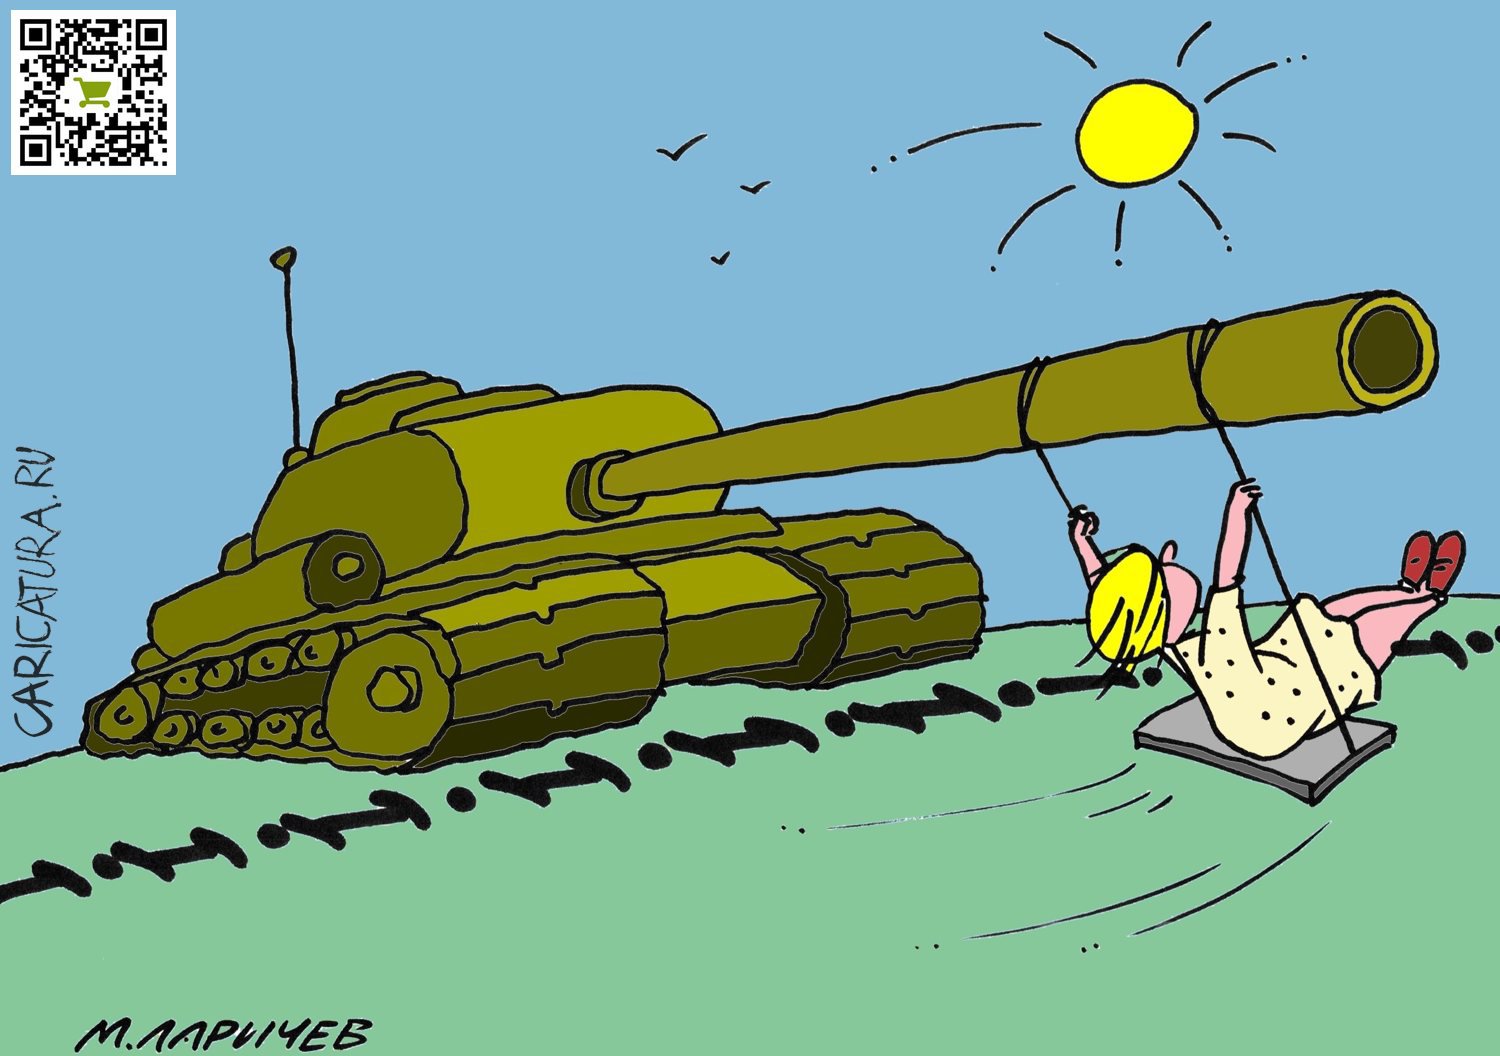 Карикатура "Войны не будет", Михаил Ларичев